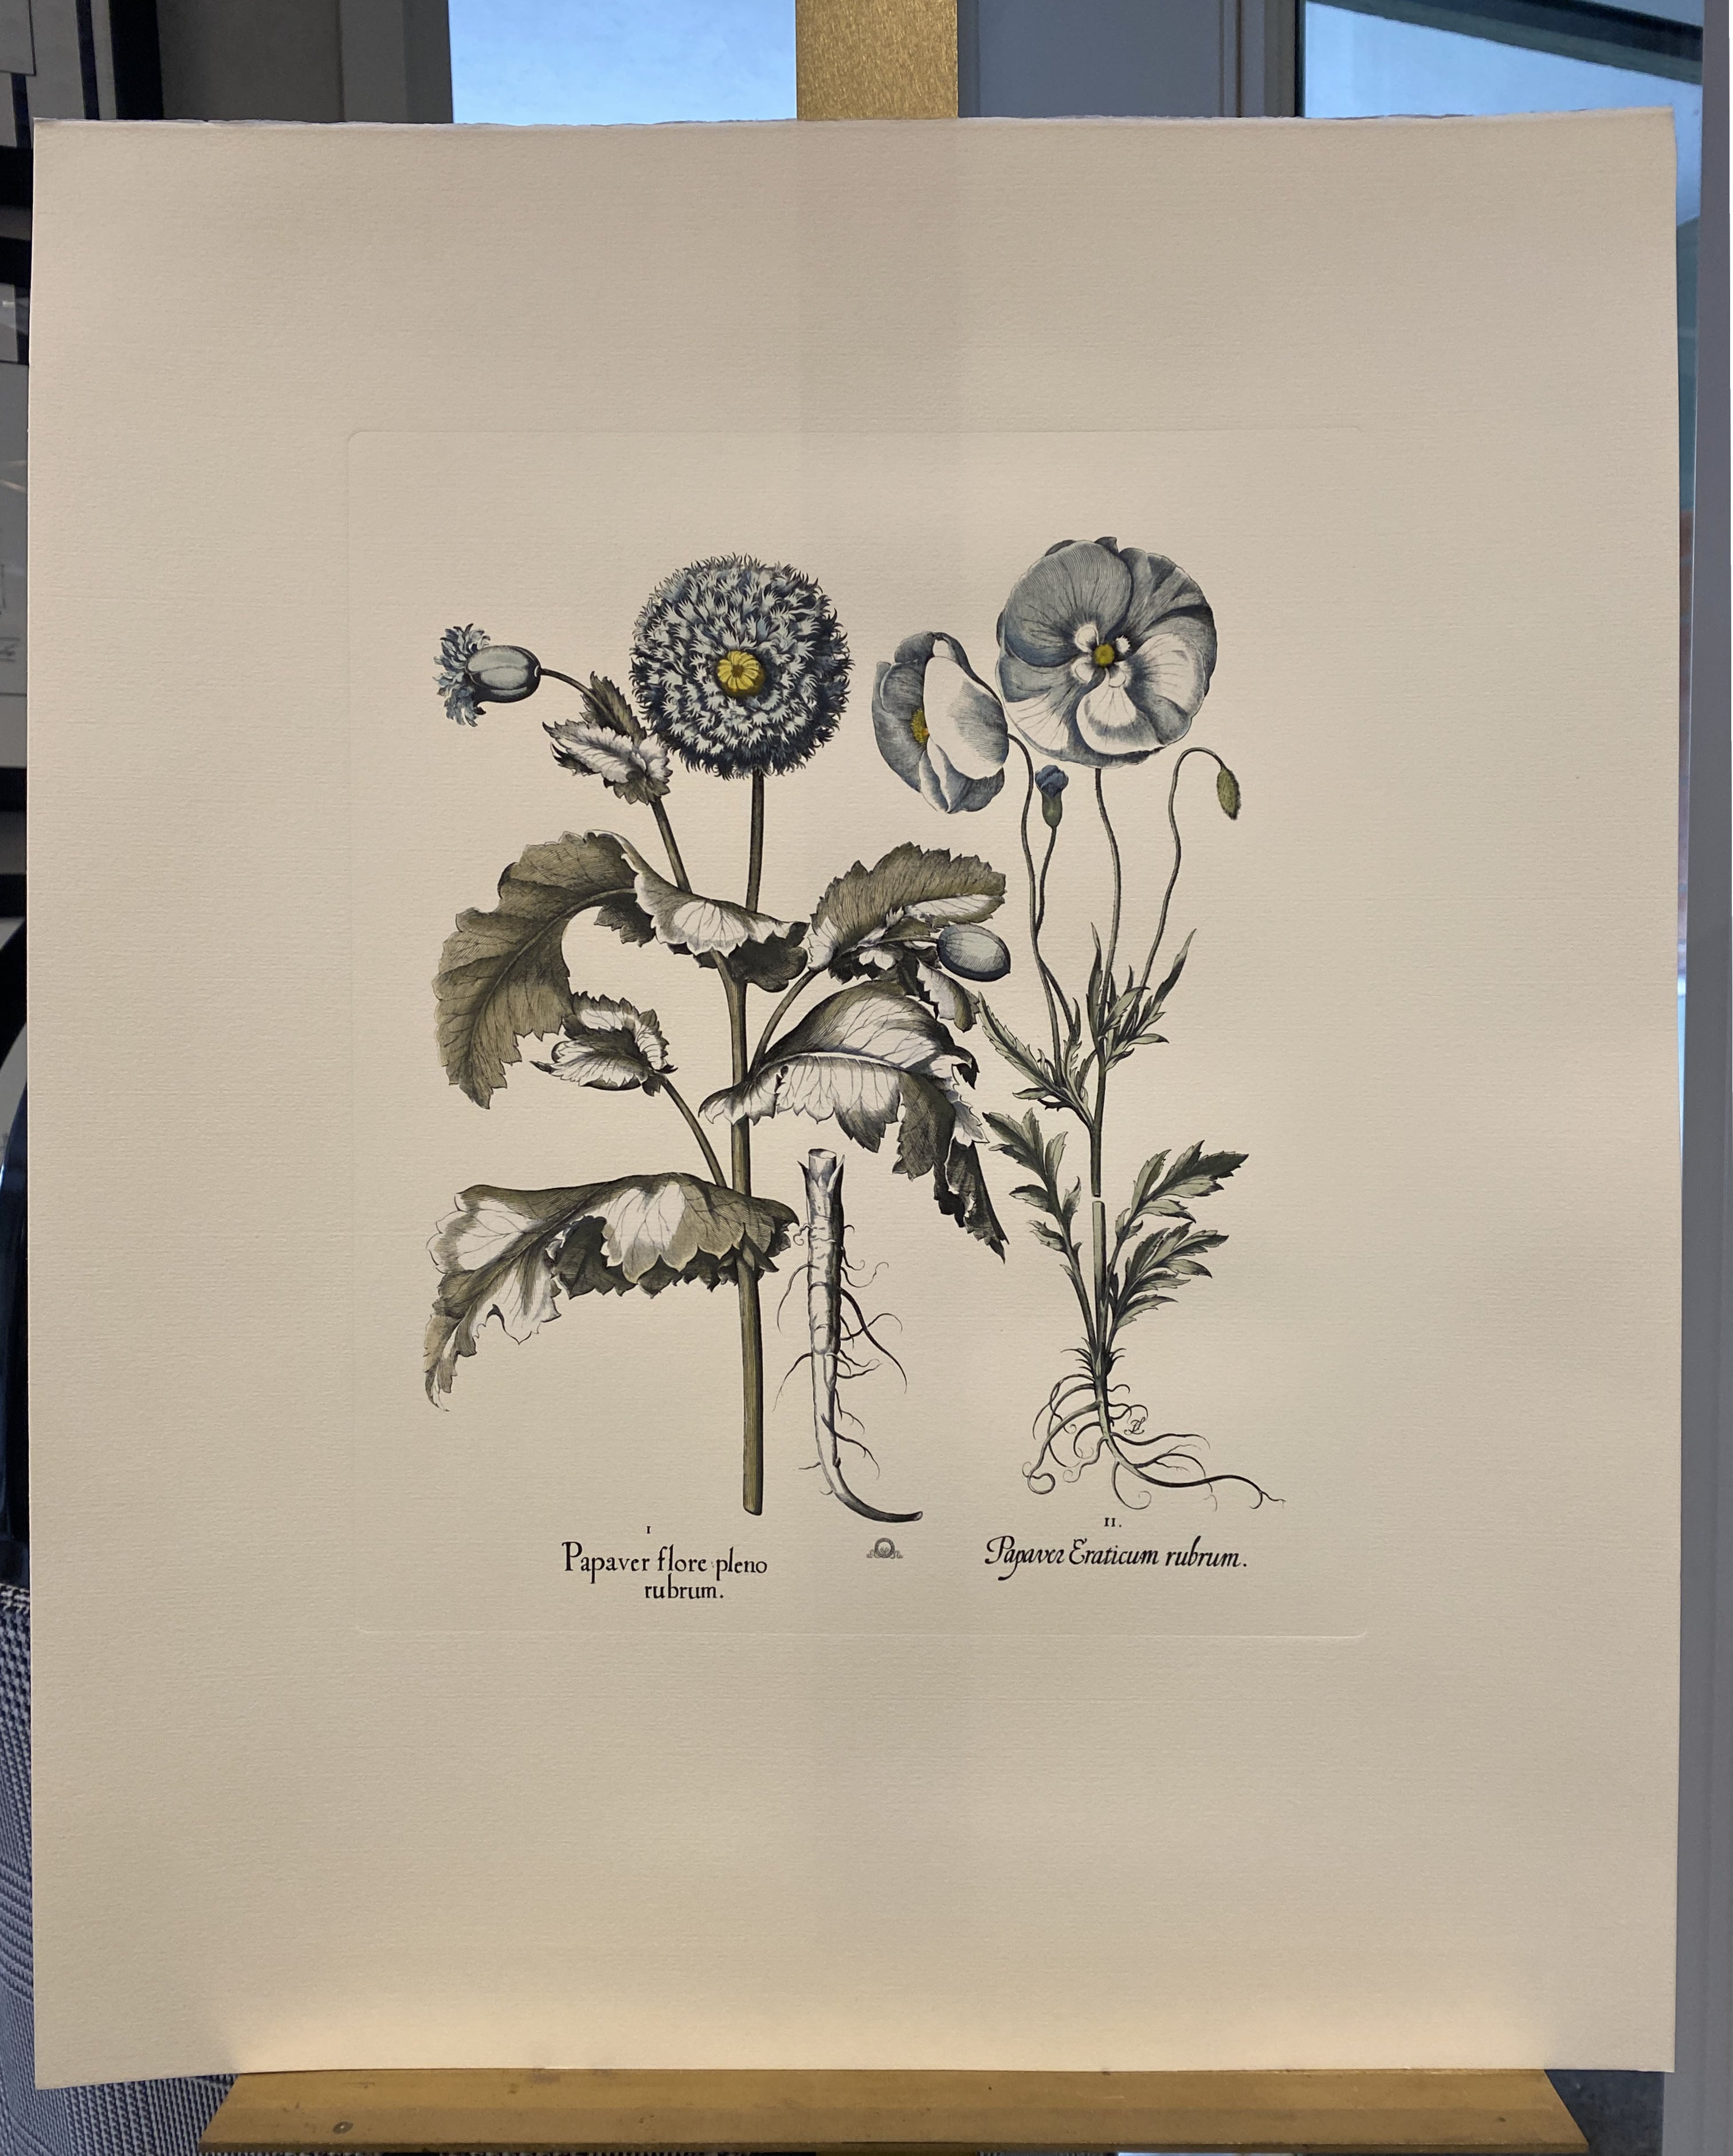 Estampe de la Collection Botanique Bulbacee représentant des Tulipes et des Narcisses, enrichie de couleurs bleues et de nuances d'aquarelle.

D'autres imprimés de fleurs Bulbacee sont disponibles pour créer une composition haute en couleur :
-